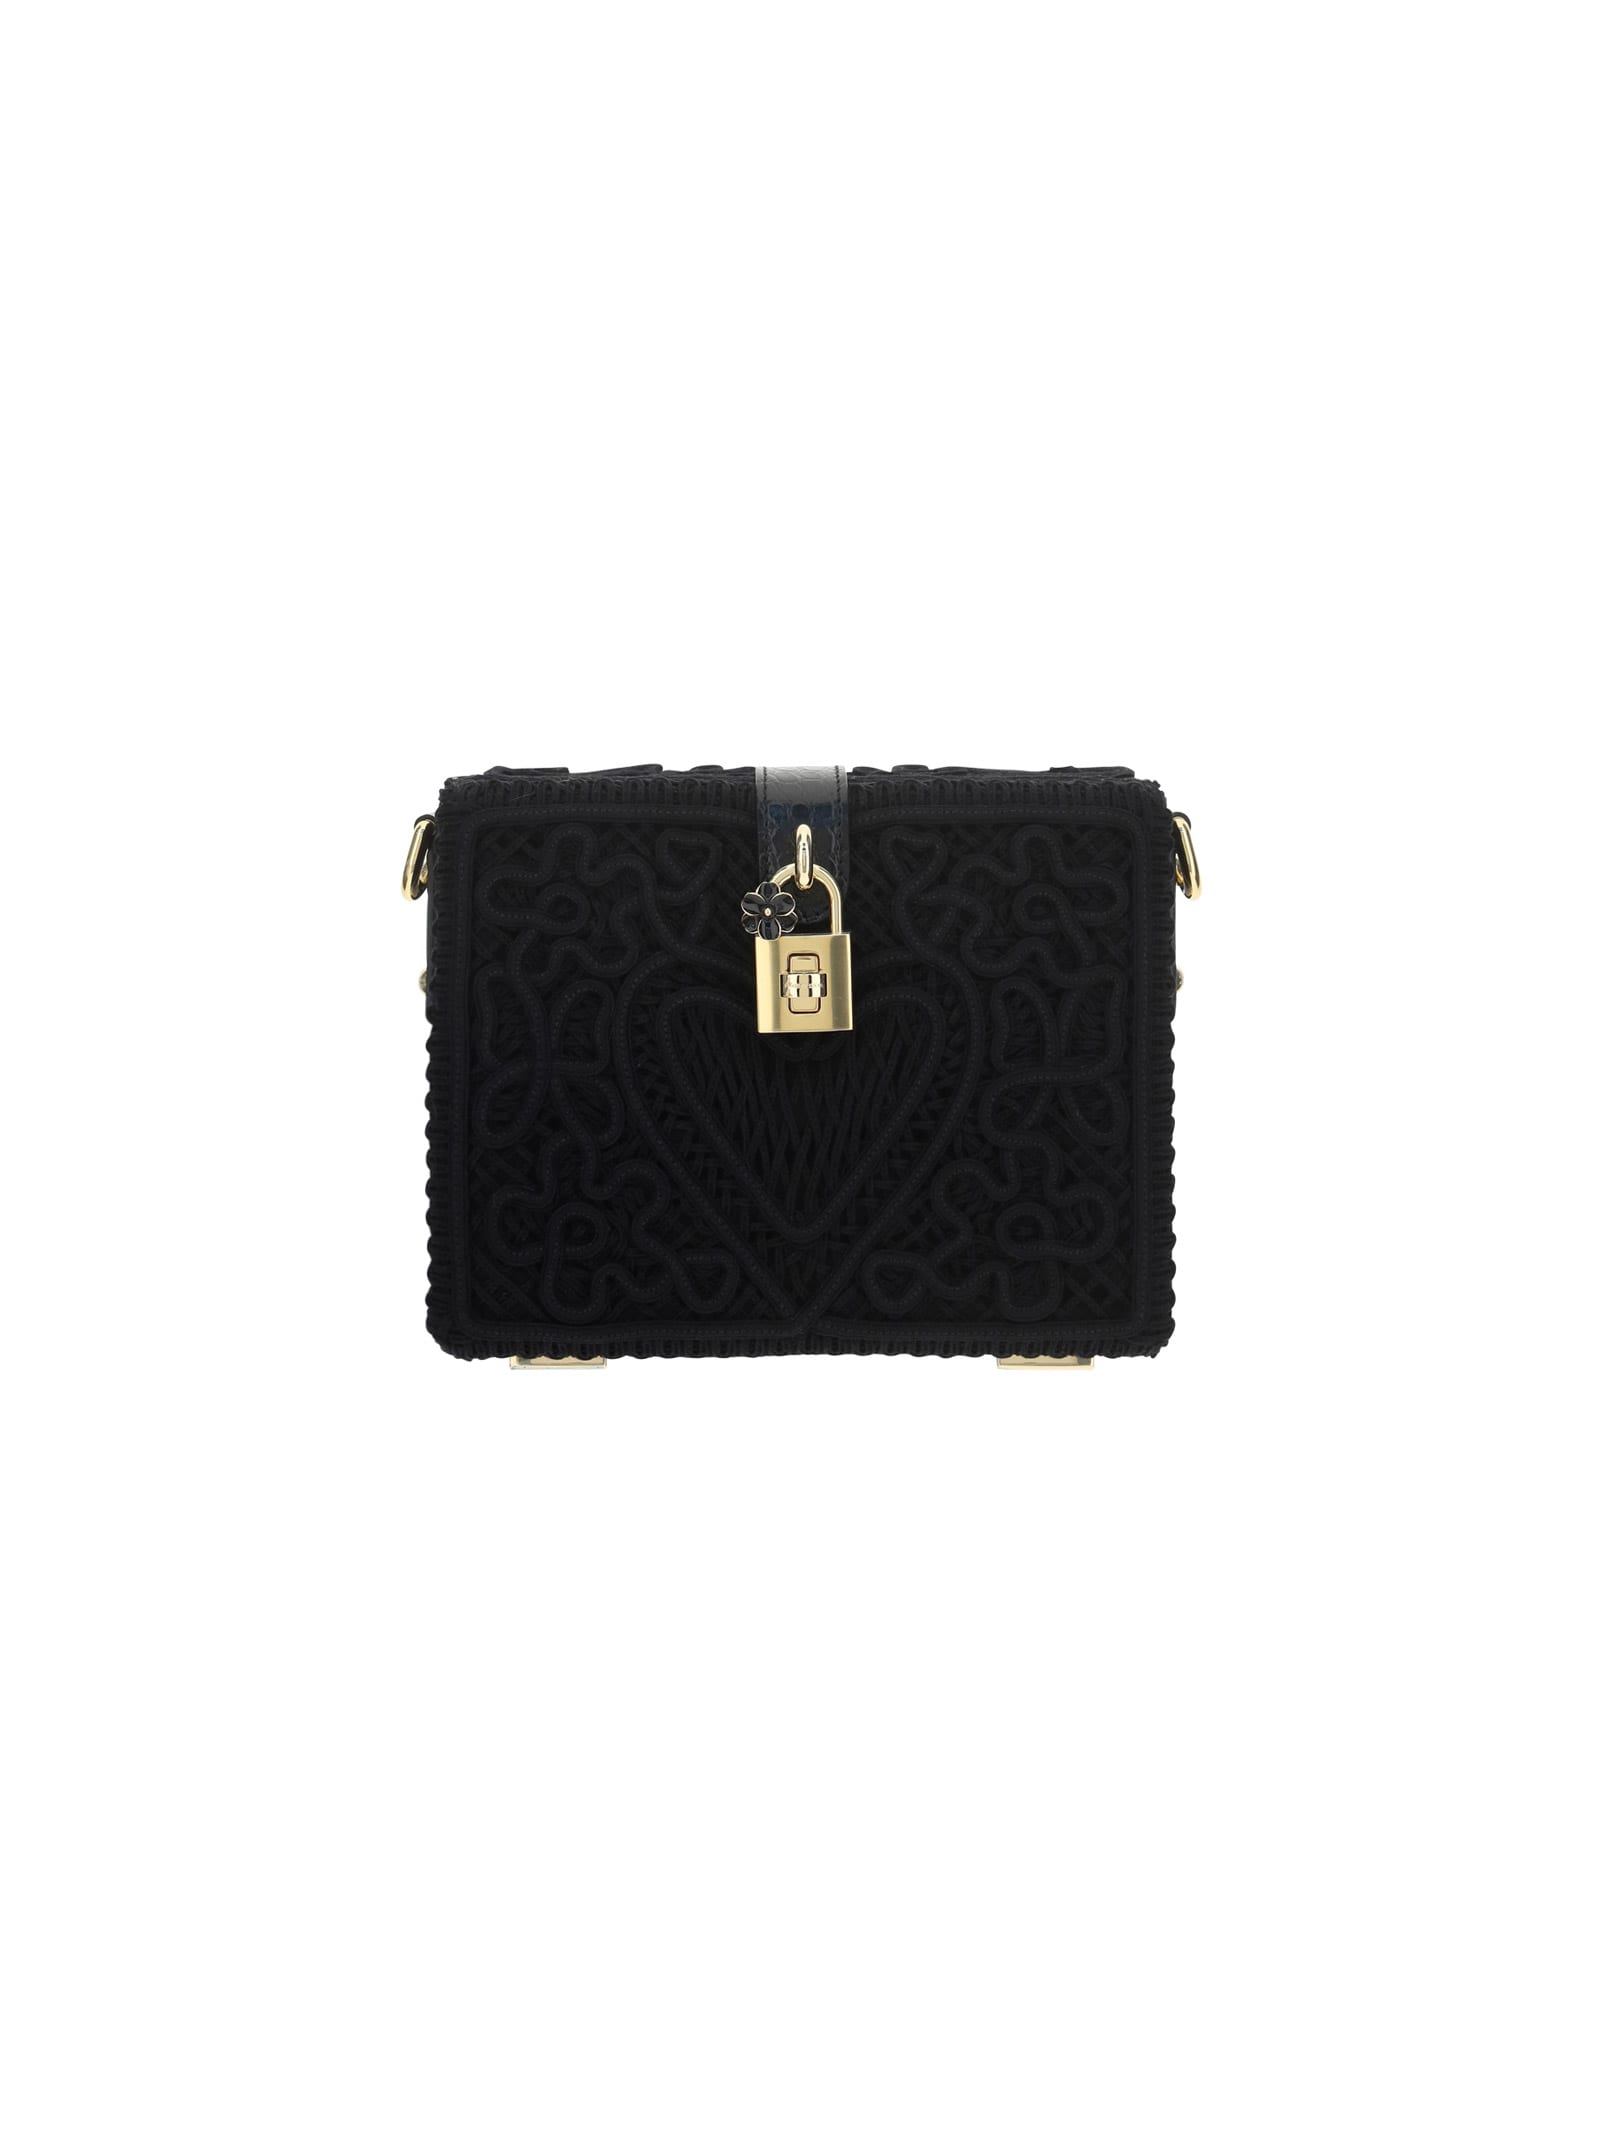 Dolce & Gabbana Cordonetto Handbag